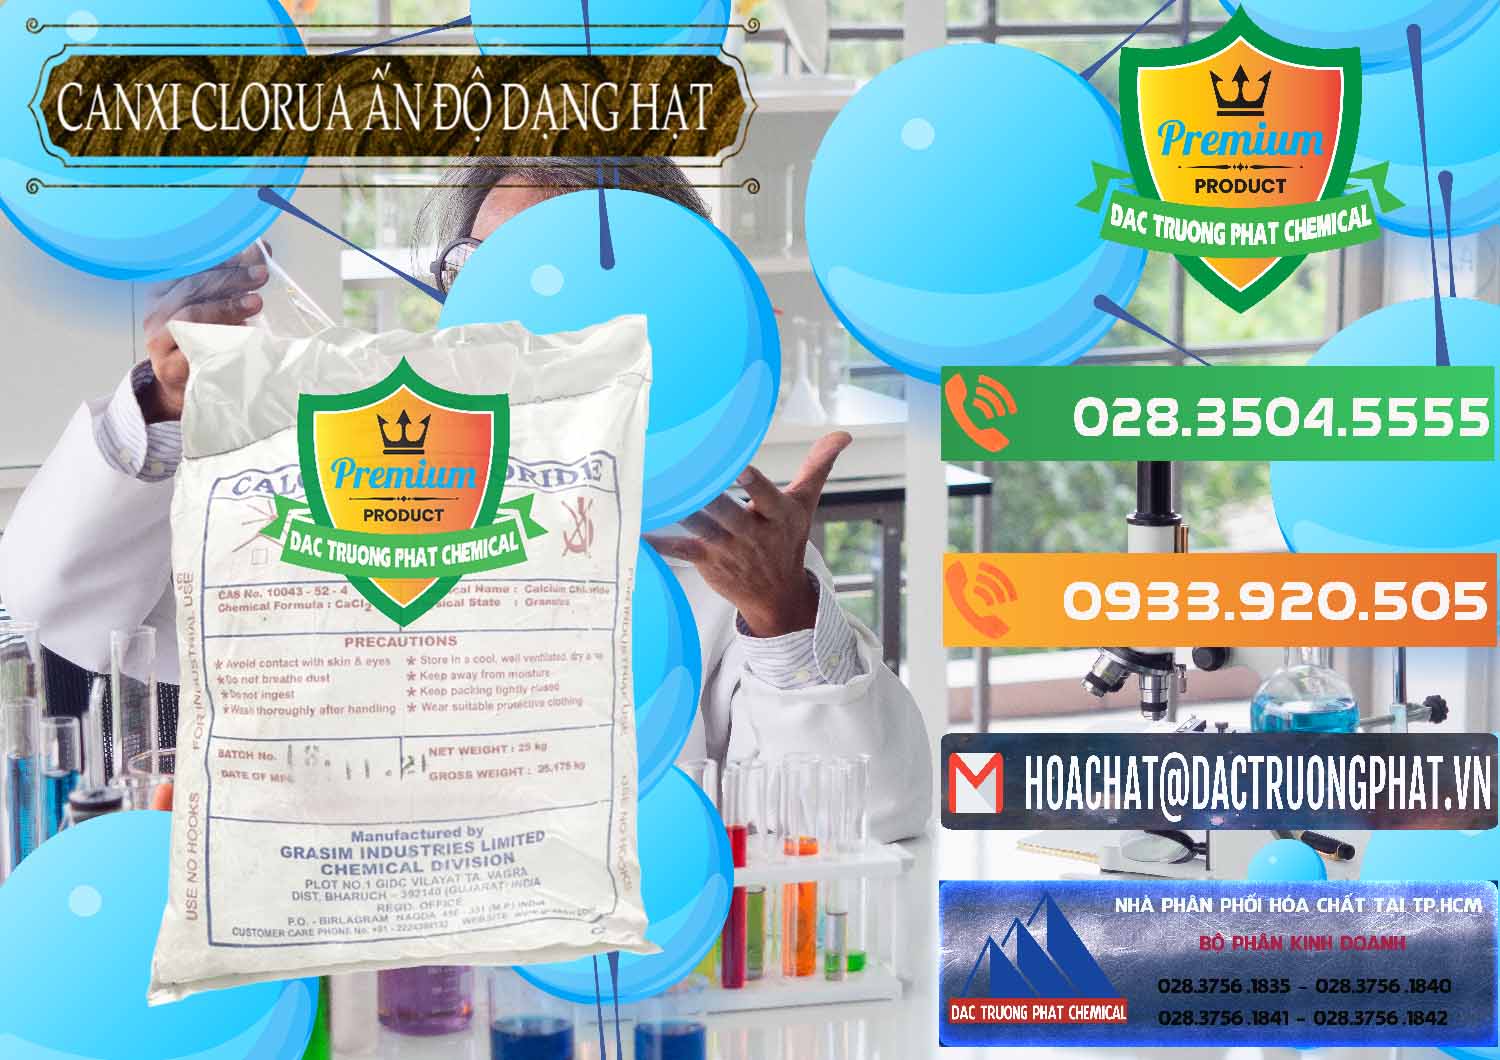 Nơi chuyên cung cấp và bán CaCl2 – Canxi Clorua Dạng Hạt Aditya Birla Grasim Ấn Độ India - 0418 - Công ty bán và phân phối hóa chất tại TP.HCM - hoachatxulynuoc.com.vn